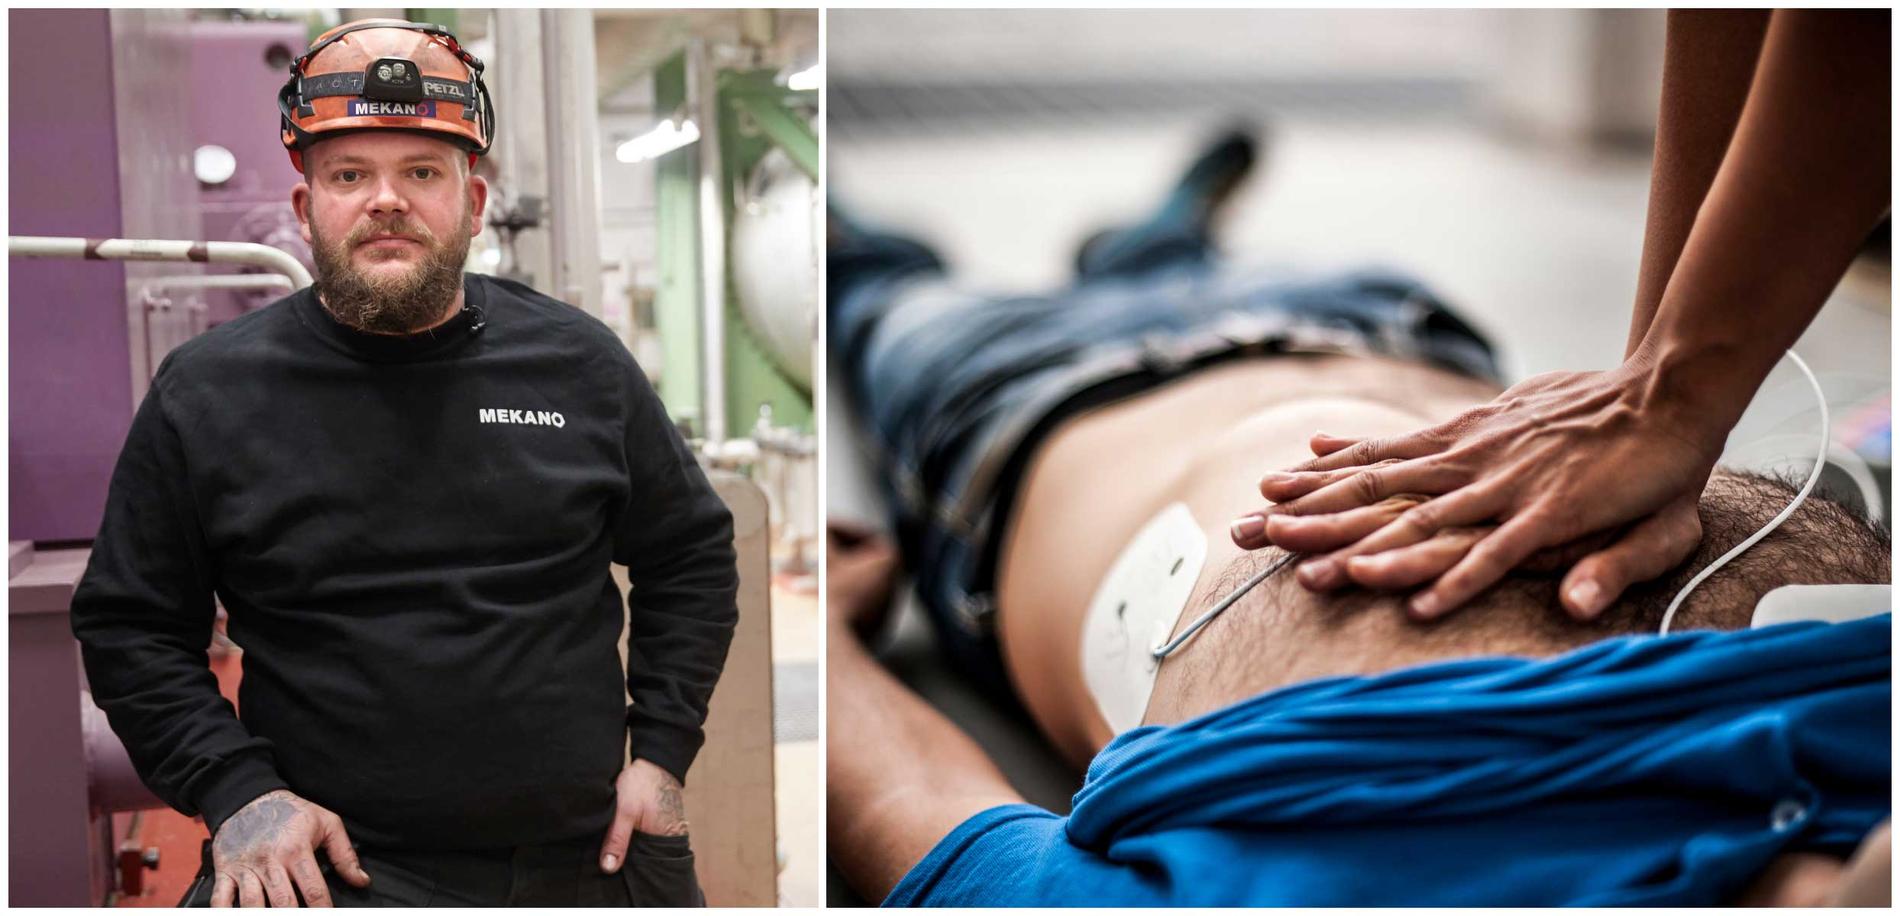 Stefan Katz räddade livet på sin kollega när han fick hjärtstopp. Tack vare att han kunde hjärt- och lungräddning kunde Stefan få liv i mannen. 